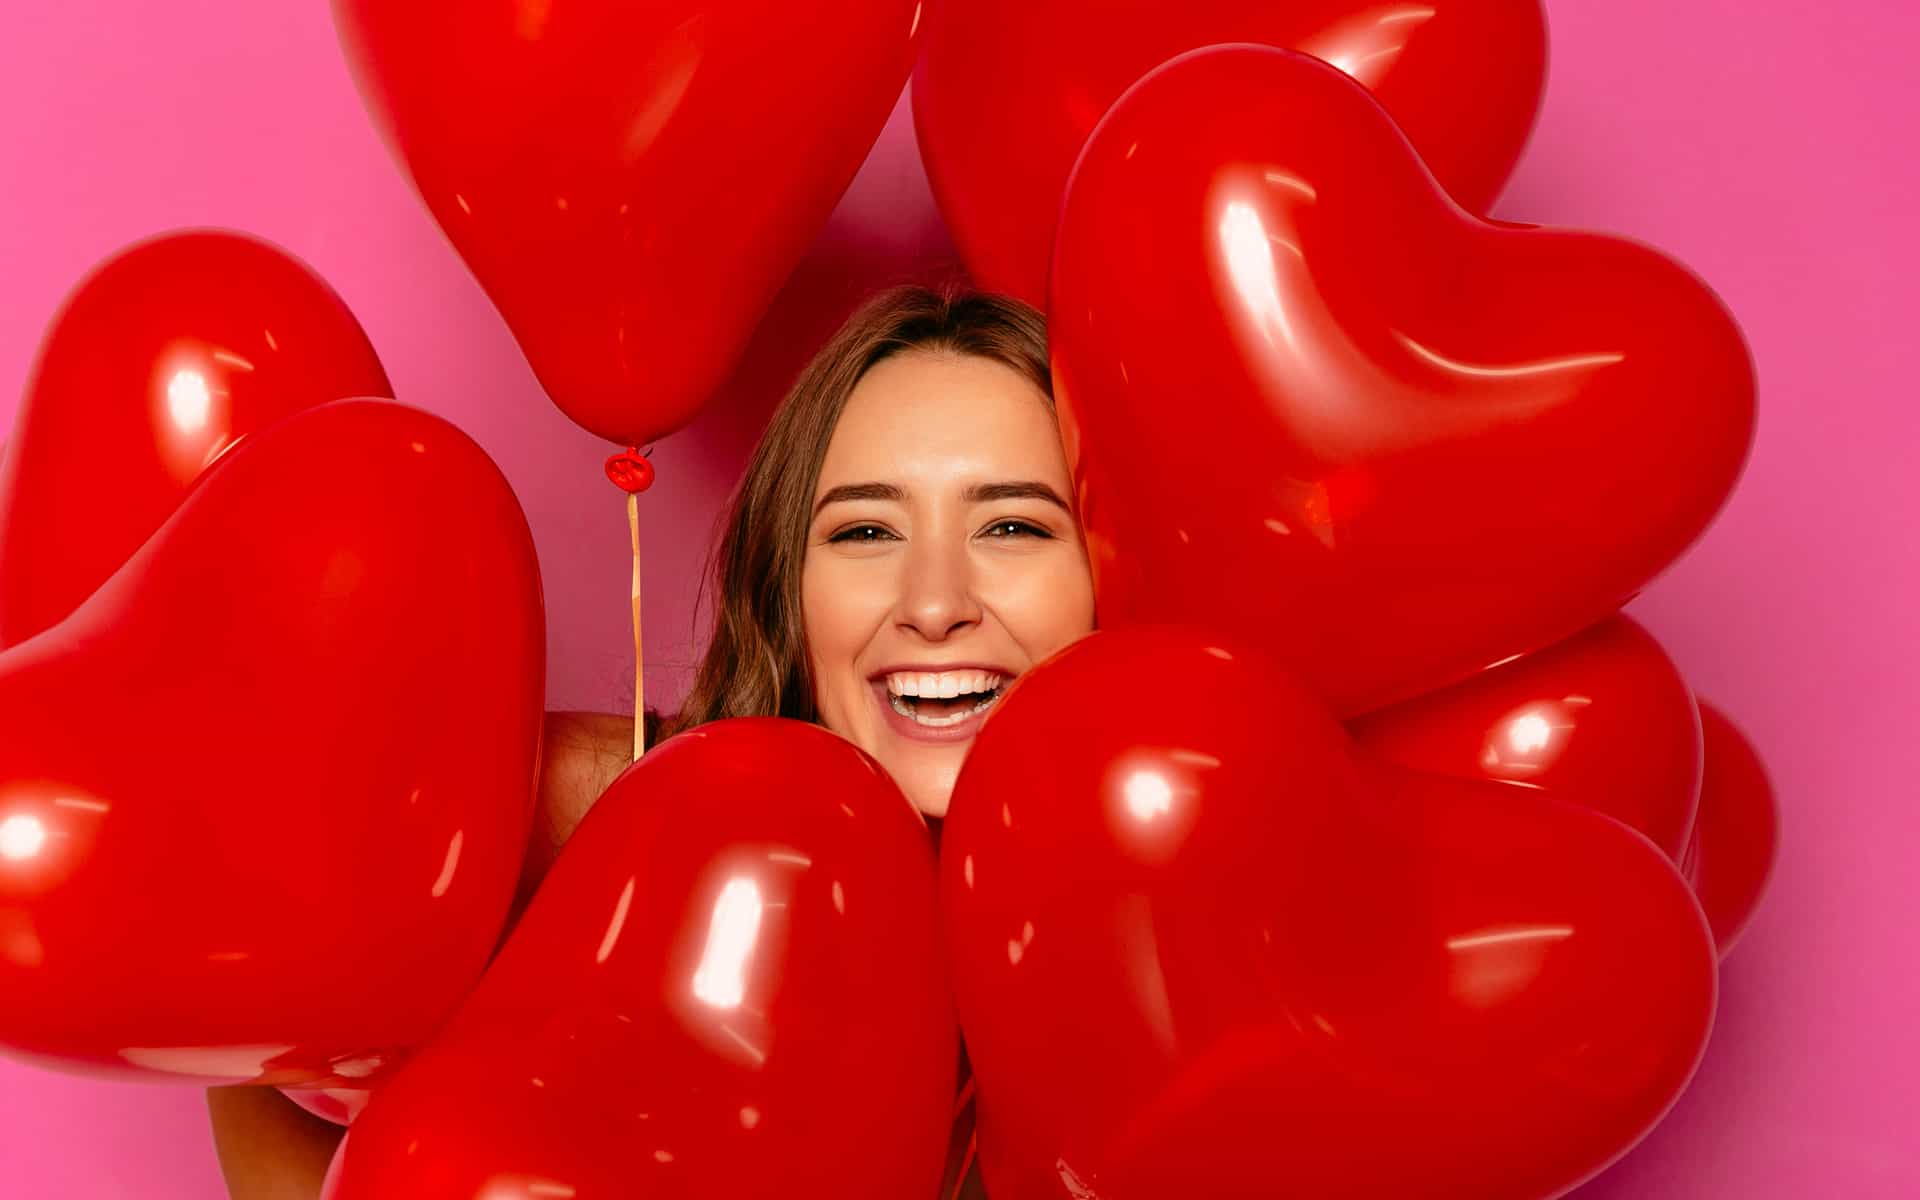 Día de San Valentín. Chica sonriente mirando la cámara, mirando un montón de globos.